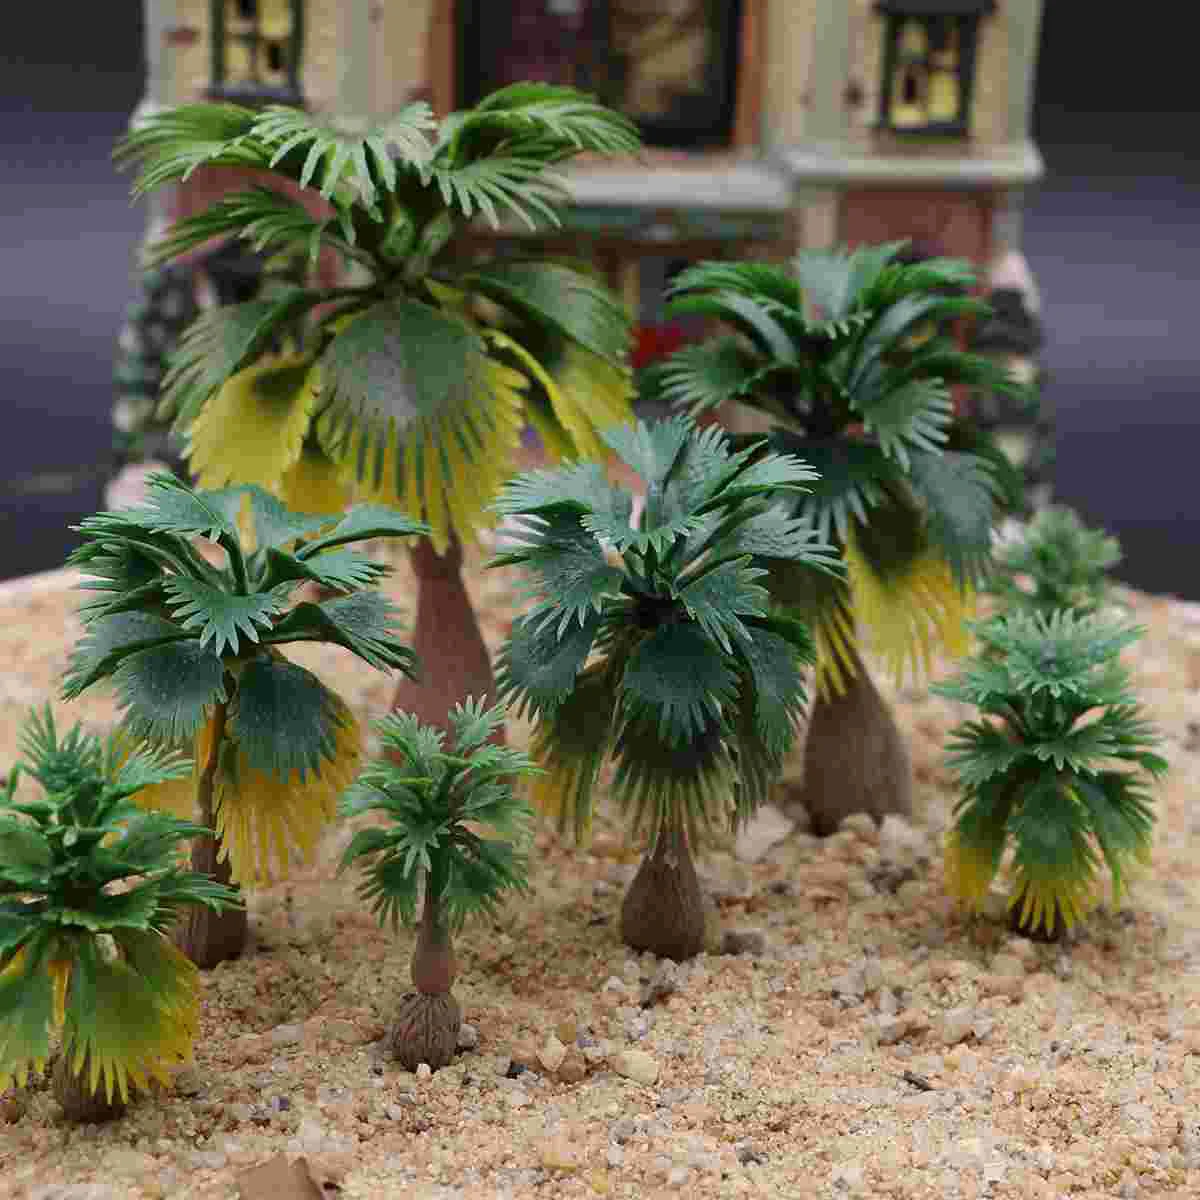 

Model Train Palm Trees Tropical Forest Landscape Train Railroad Architecture Diorama Tree Decor Artificial Plant Accessory